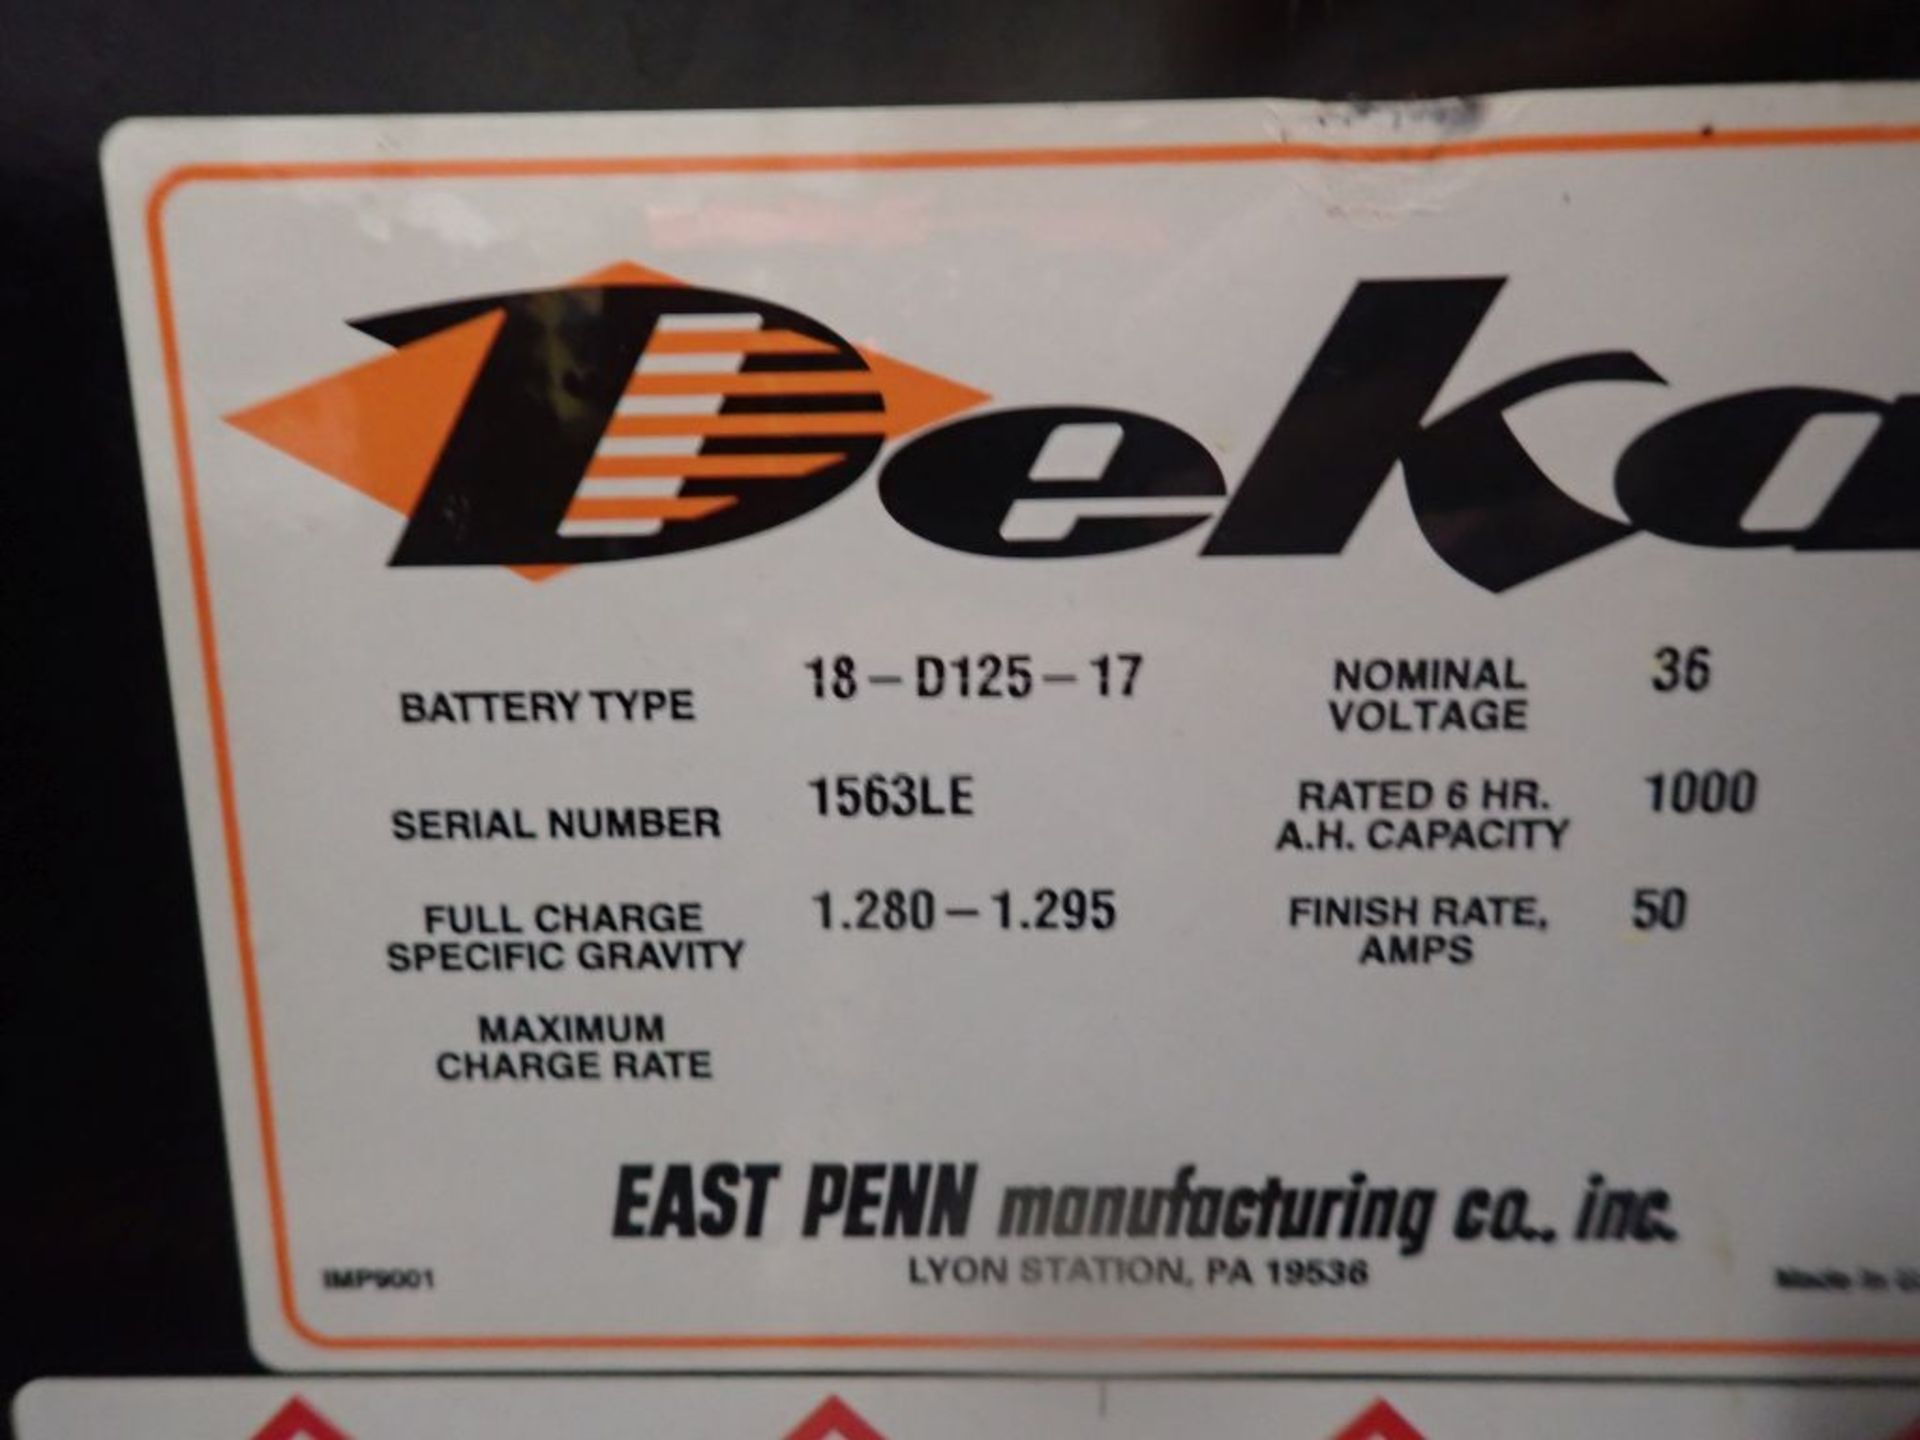 Deka 36V Forklift Battery - 36V; Type 18-D125-17; Tag: 221299; Lot Loading Fee: $30 - Image 3 of 3